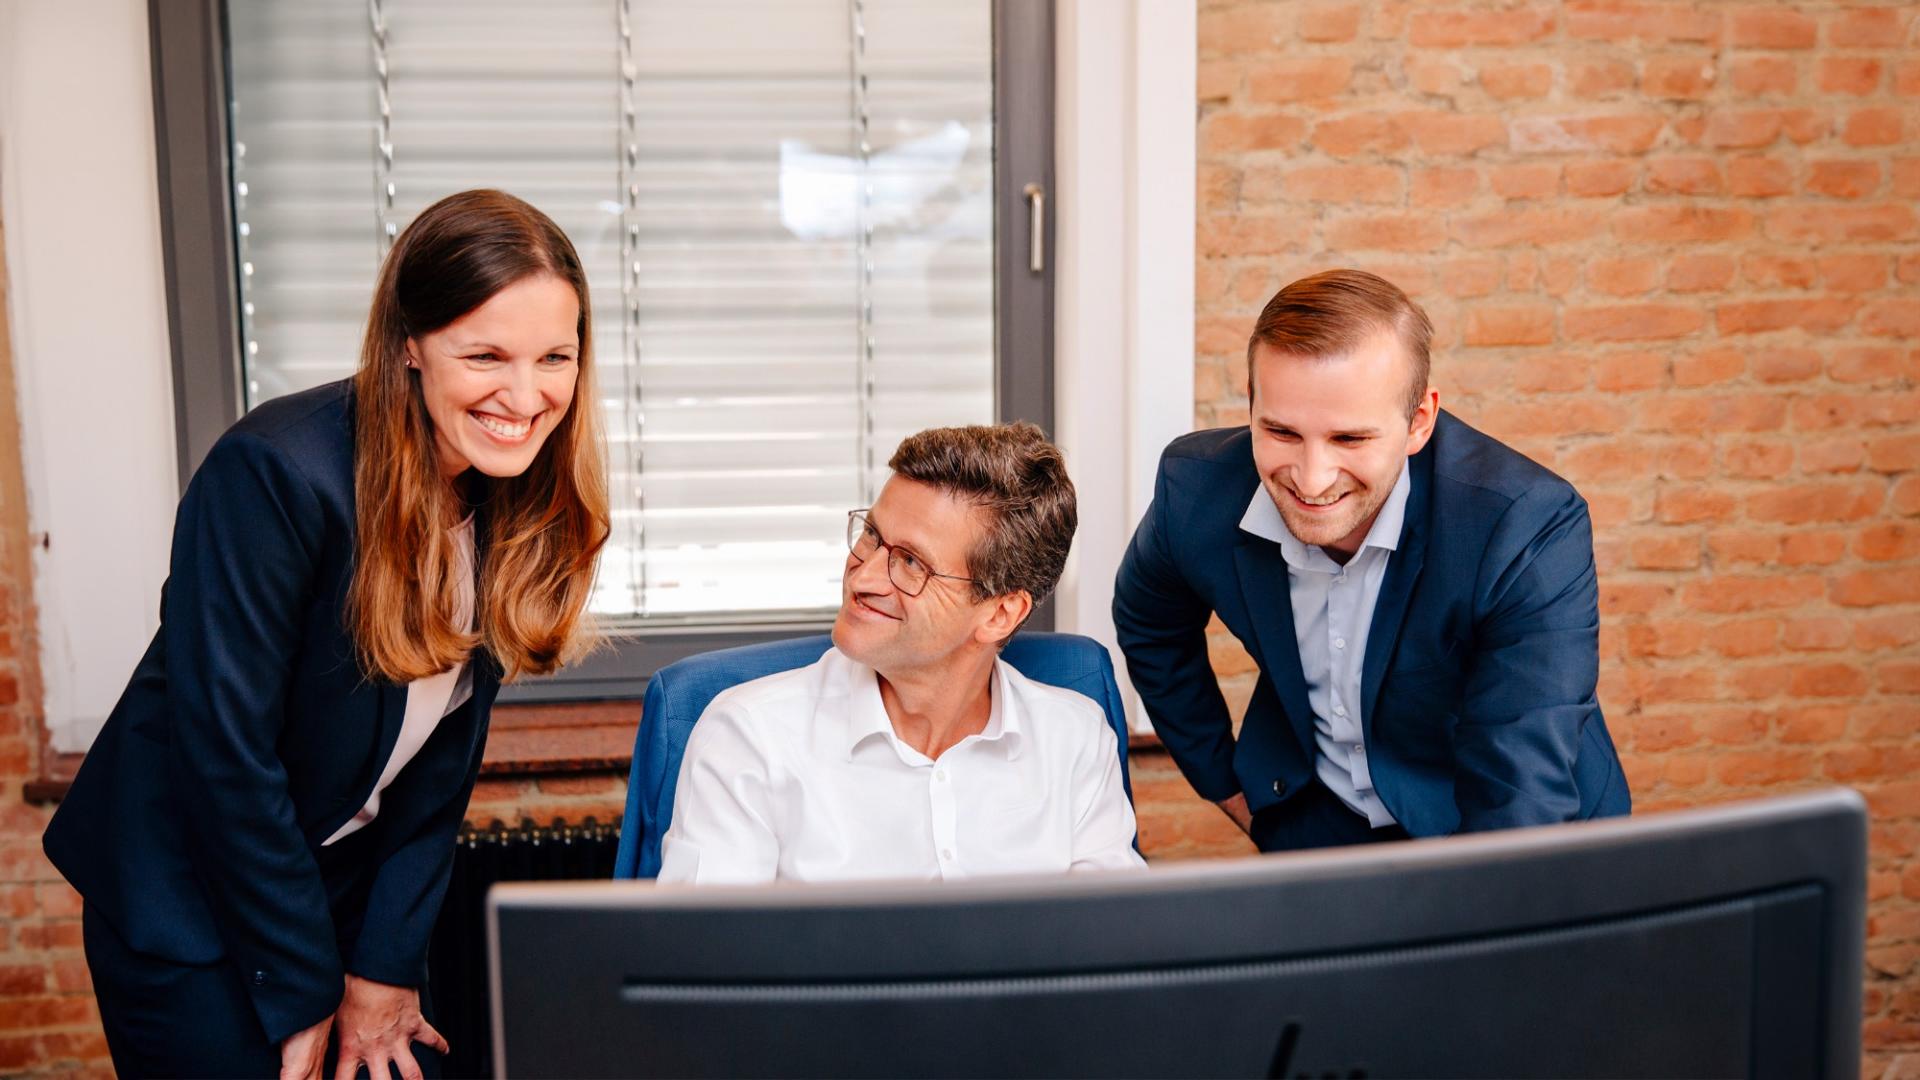 Eine Frau und zwei Männer in Geschäftskleidung blicken auf einen Monitor und lächeln